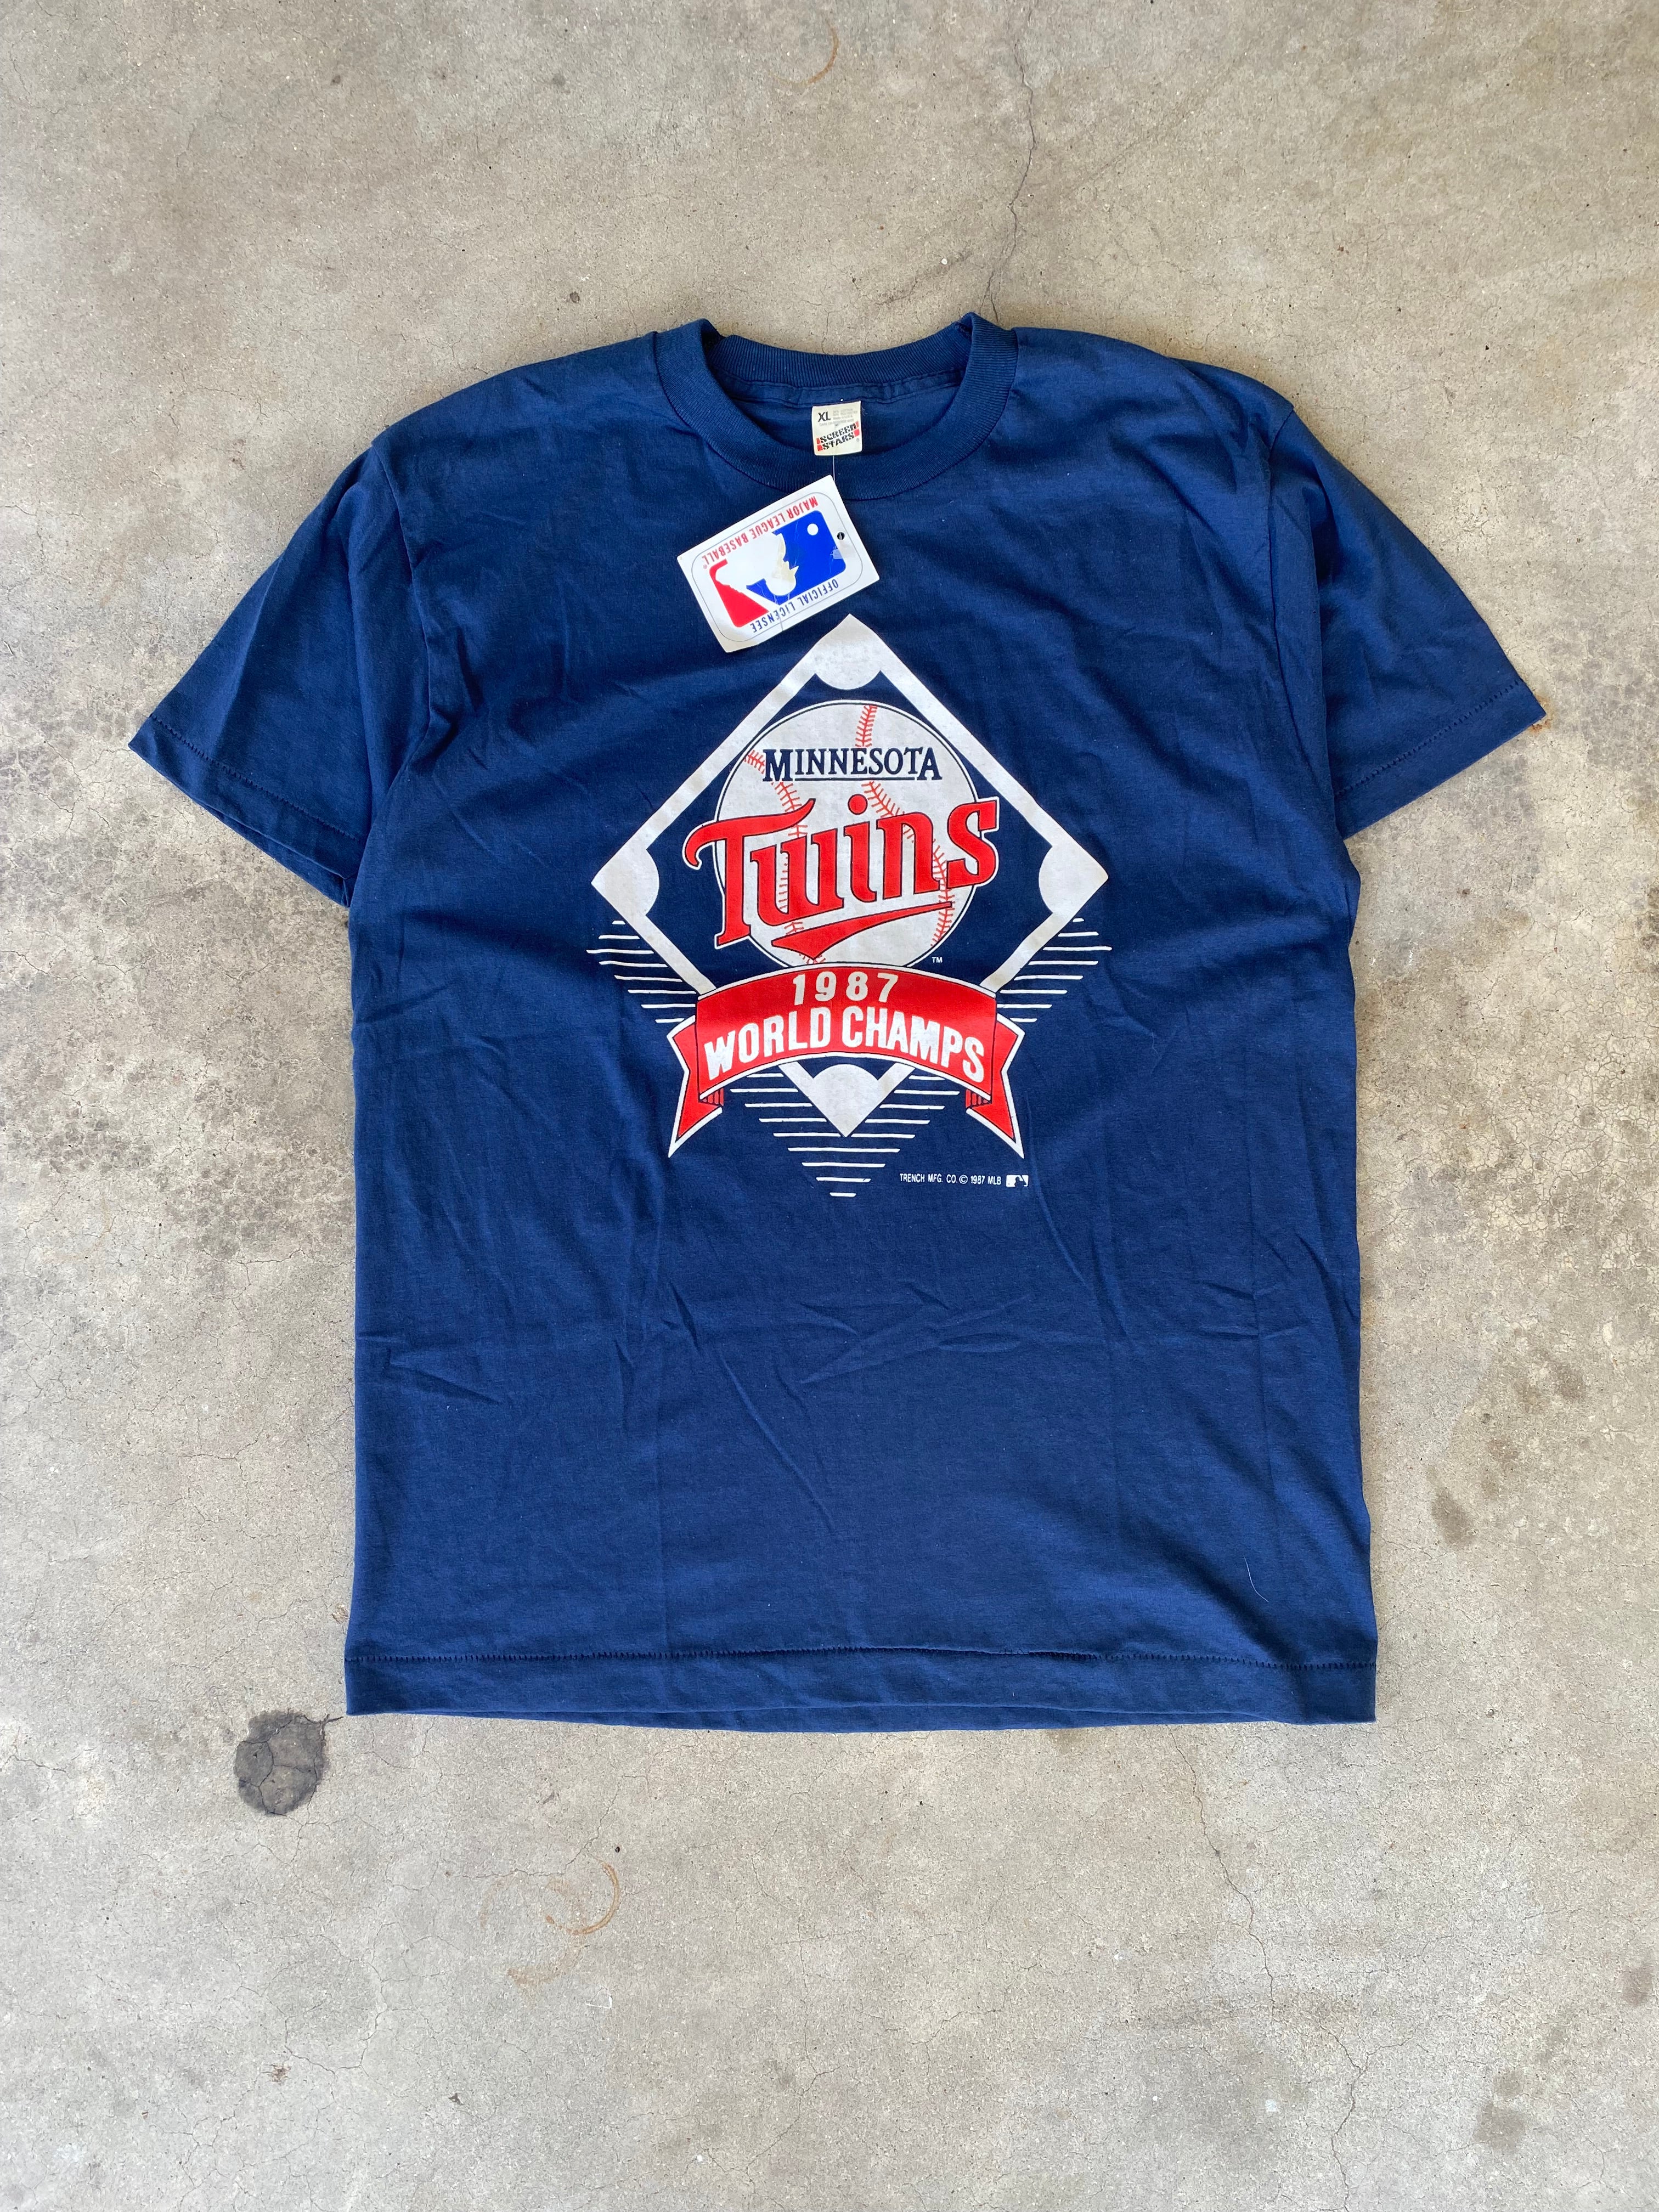 1987 Minnesota Twins World Champions T-Shirt (L)